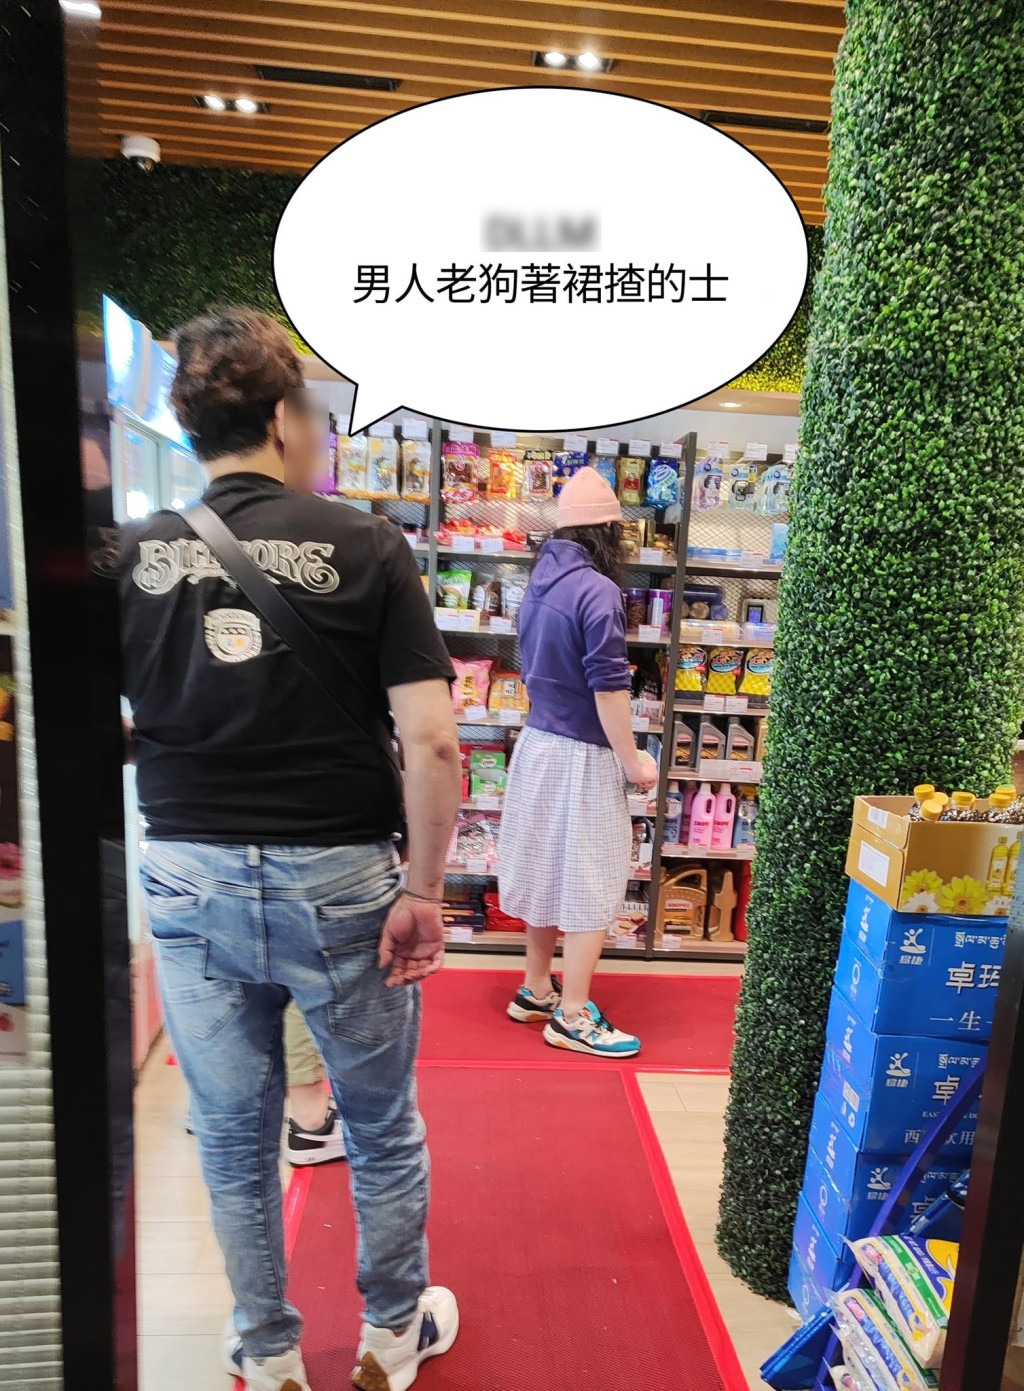 有網民近日拍到一張「易服的哥」著裙揸的士的相片，該「易服的哥」當時正身處加油站內便利店。